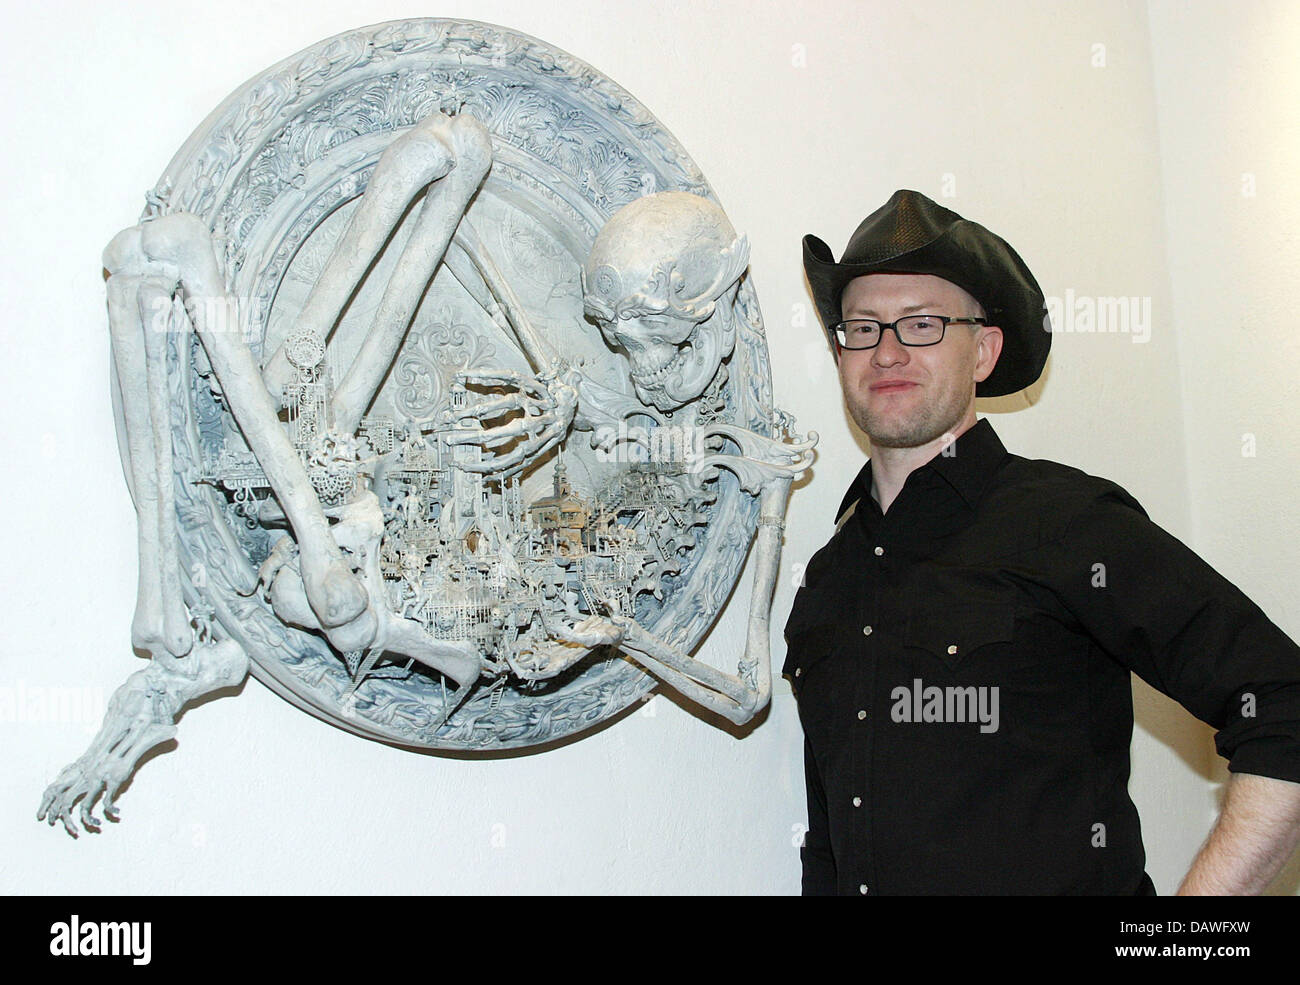 Noi artisti Kris Kuksi raffigurata con oine delle sue opere presso la Strychnin Gallery di Berlino, Germania, 13 aprile 2007. Egli presenta le sue opere comprese nel prezzo da 2.500 a 5.500 euro sotto il tema "mondi perduti". Foto: Xamax Foto Stock